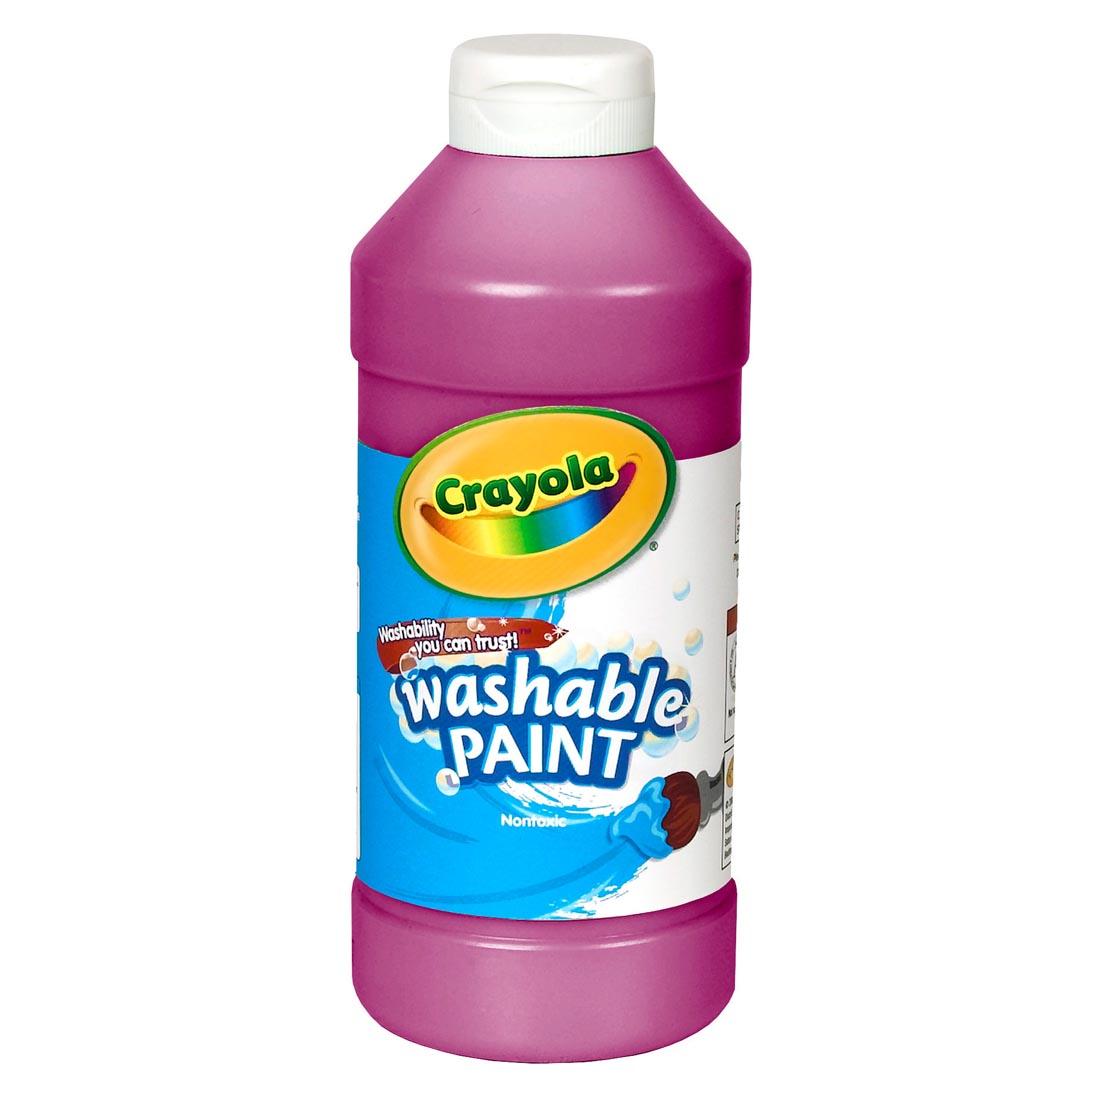 Bottle of Magenta Crayola Washable Paint